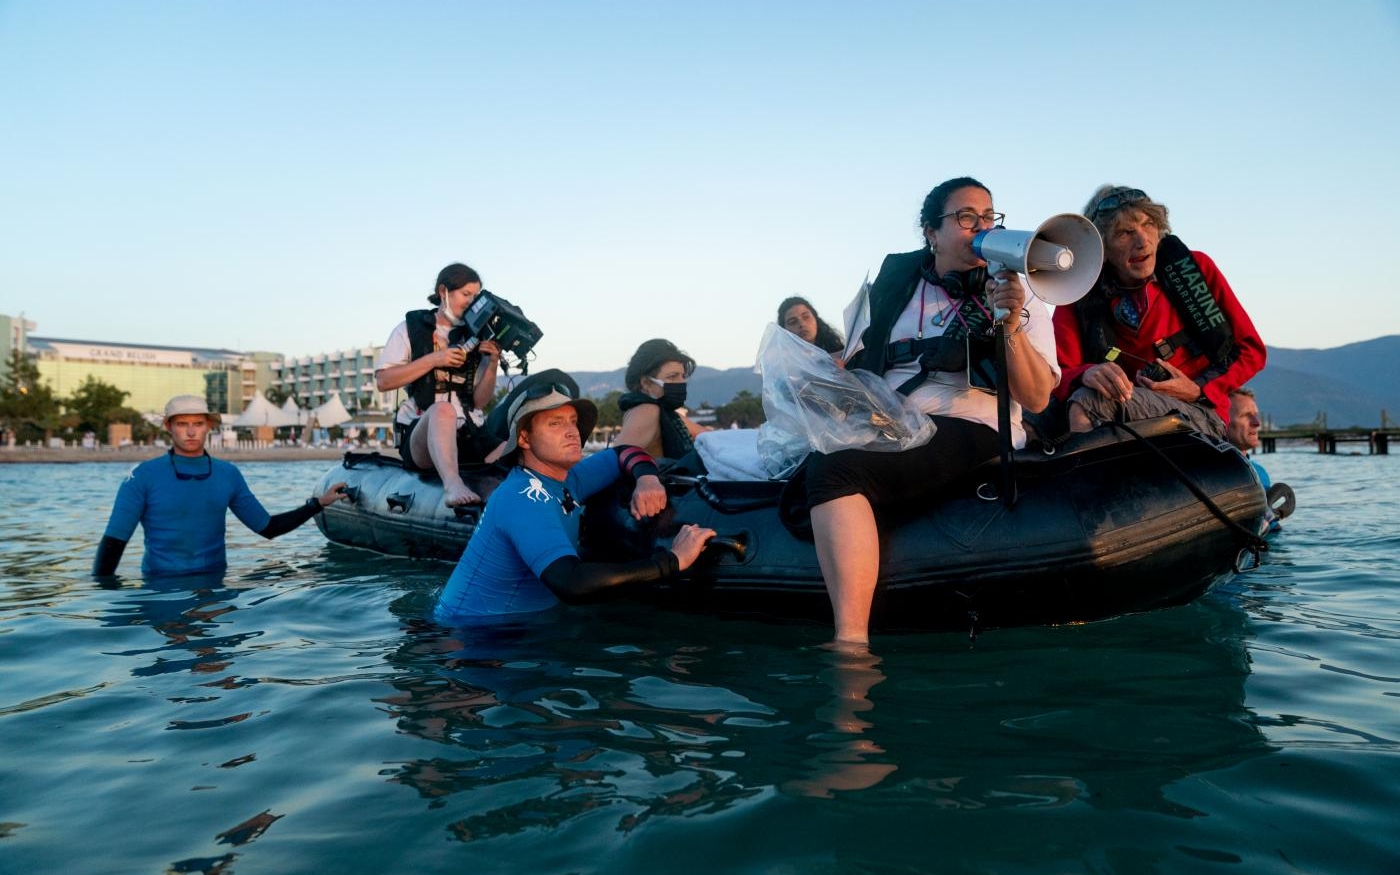 La réalisatrice Sally El Hosaini et son équipe pendant le tournage des scènes en mer Égée, qui a duré plusieurs heures (Netflix)